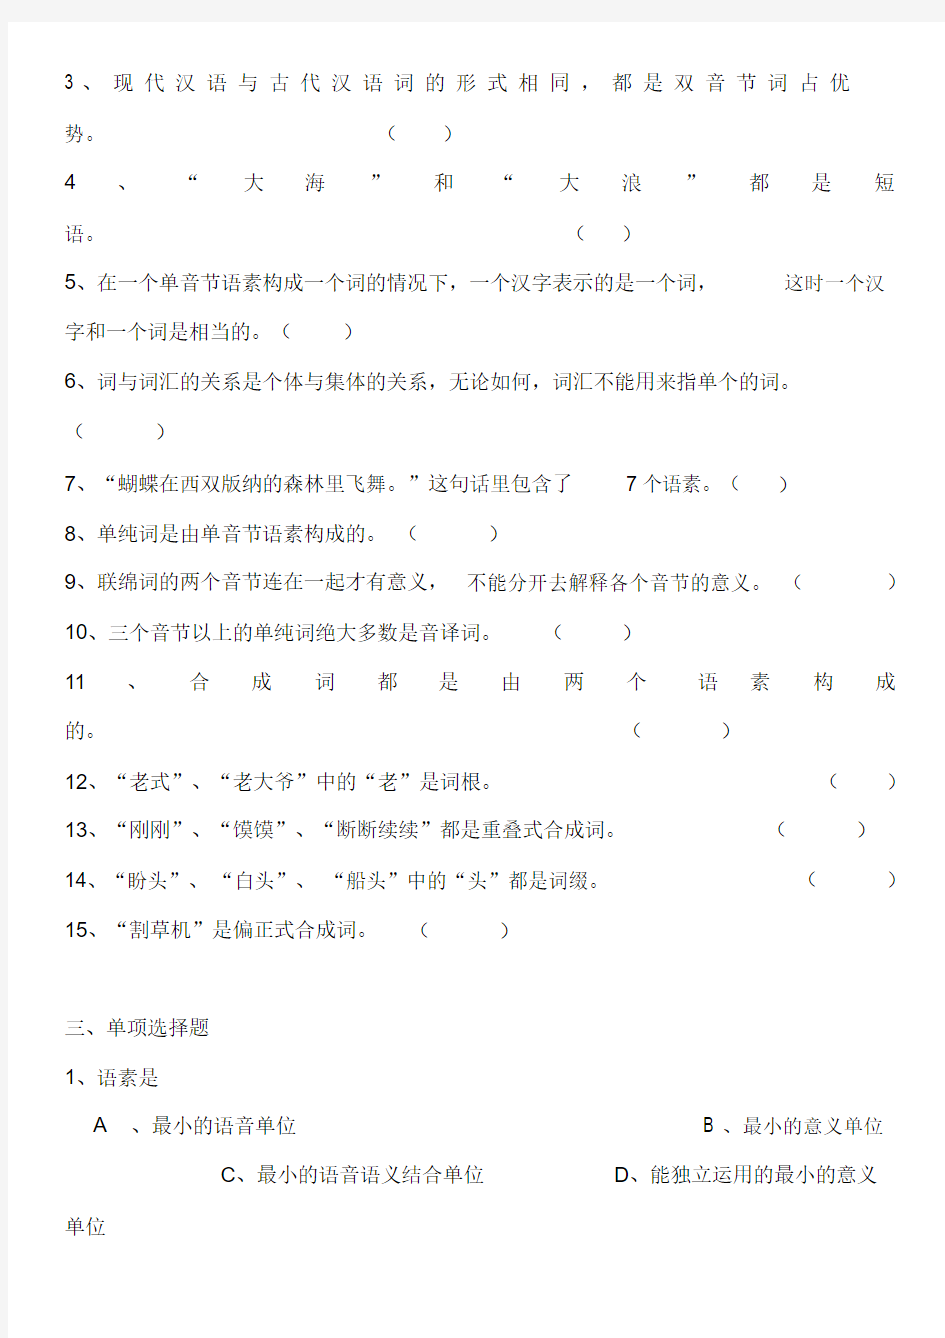 现代汉语词汇练习题(20201007193711).docx